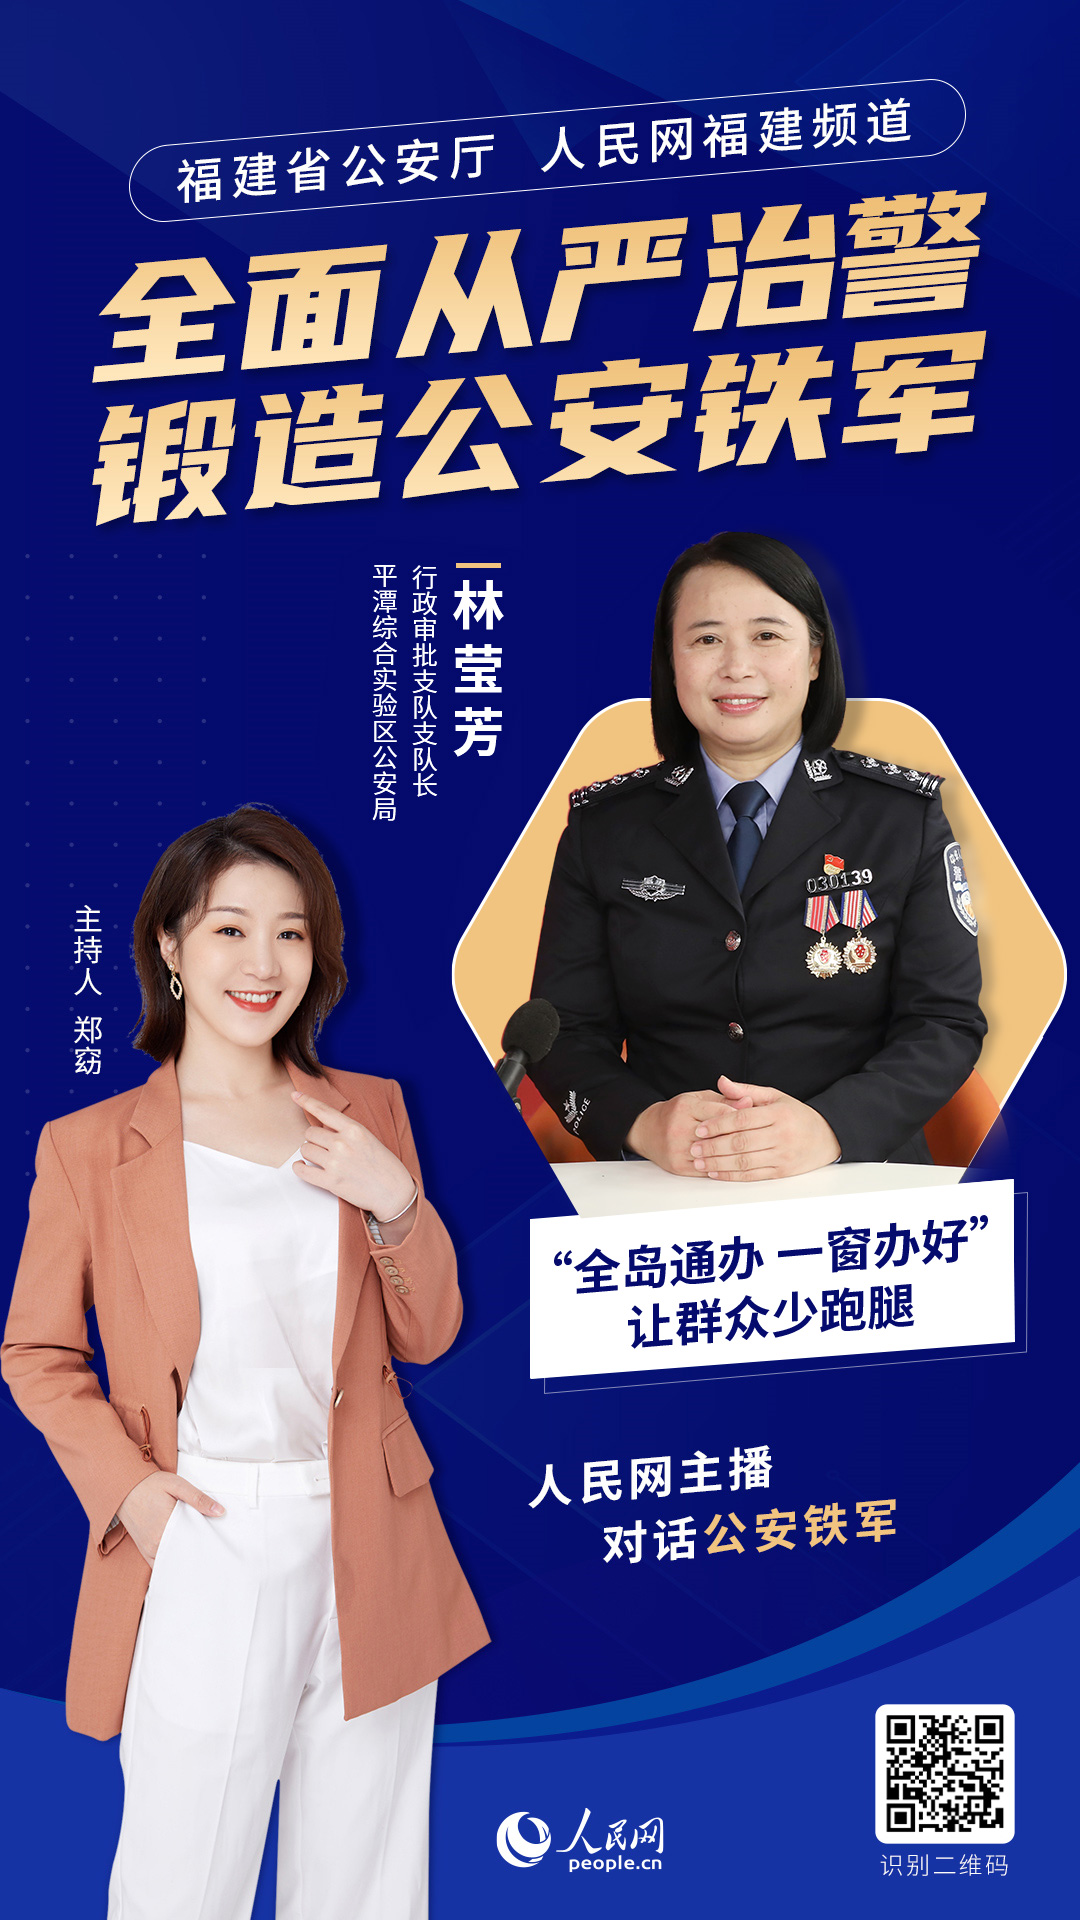 平潭综合实验区公安局行政审批支队支队长 林莹芳